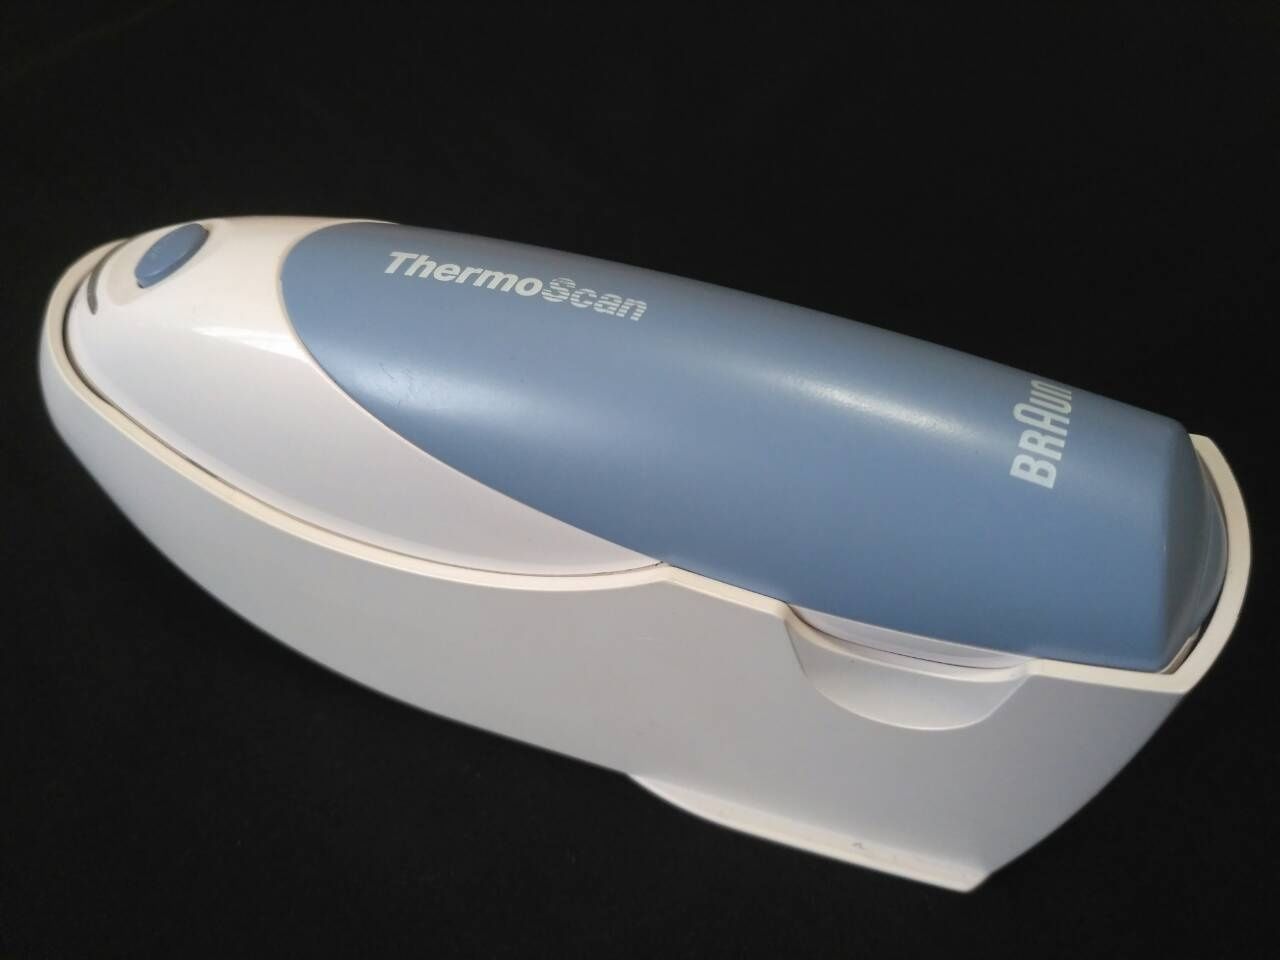 Продам ушной термо-сканер фирмы Braun.